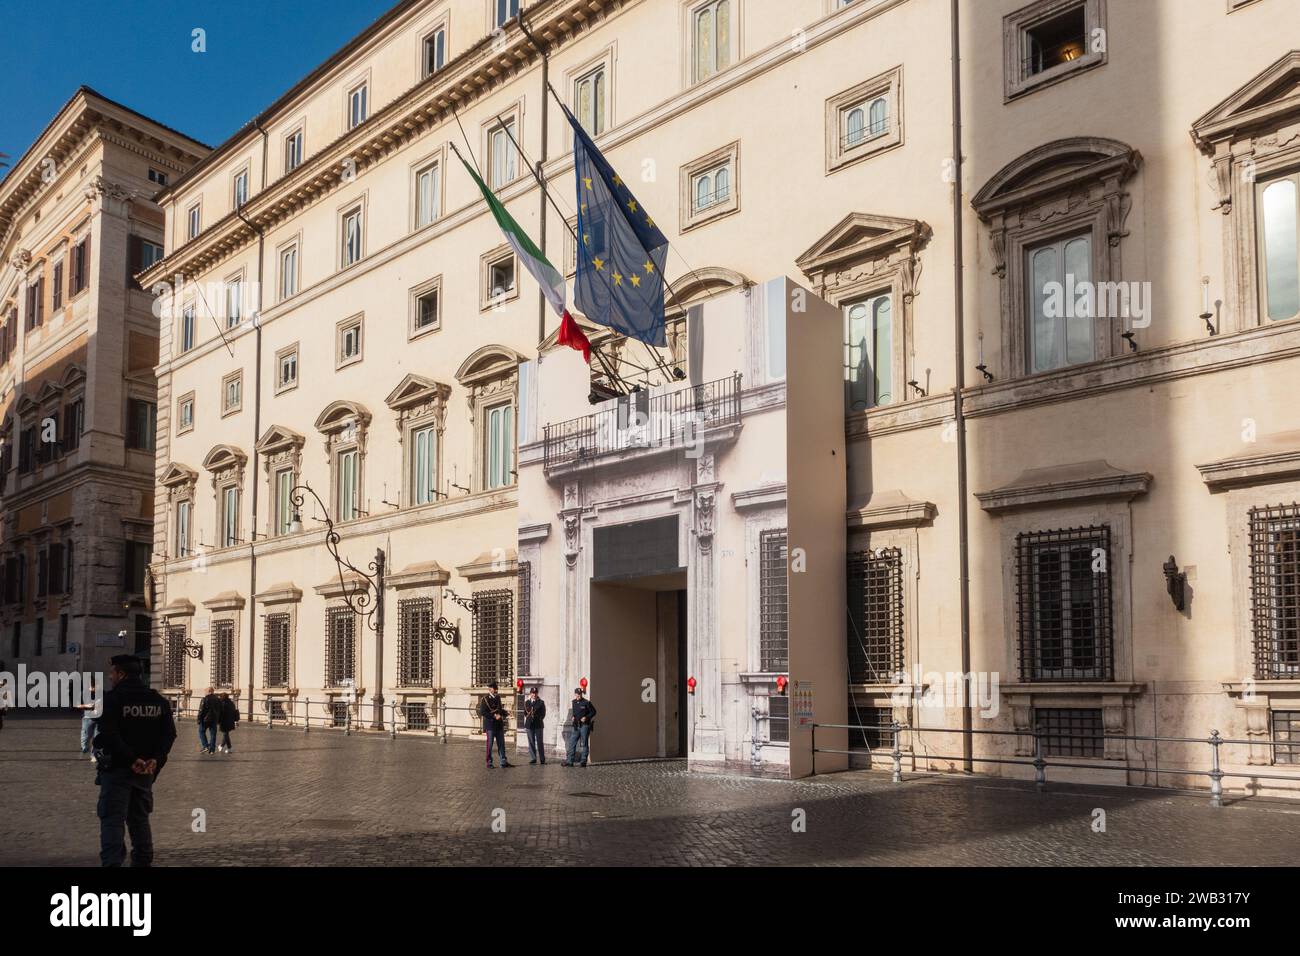 Palazzo Chigi, Italian Government seat. Rome, Italy Stock Photo